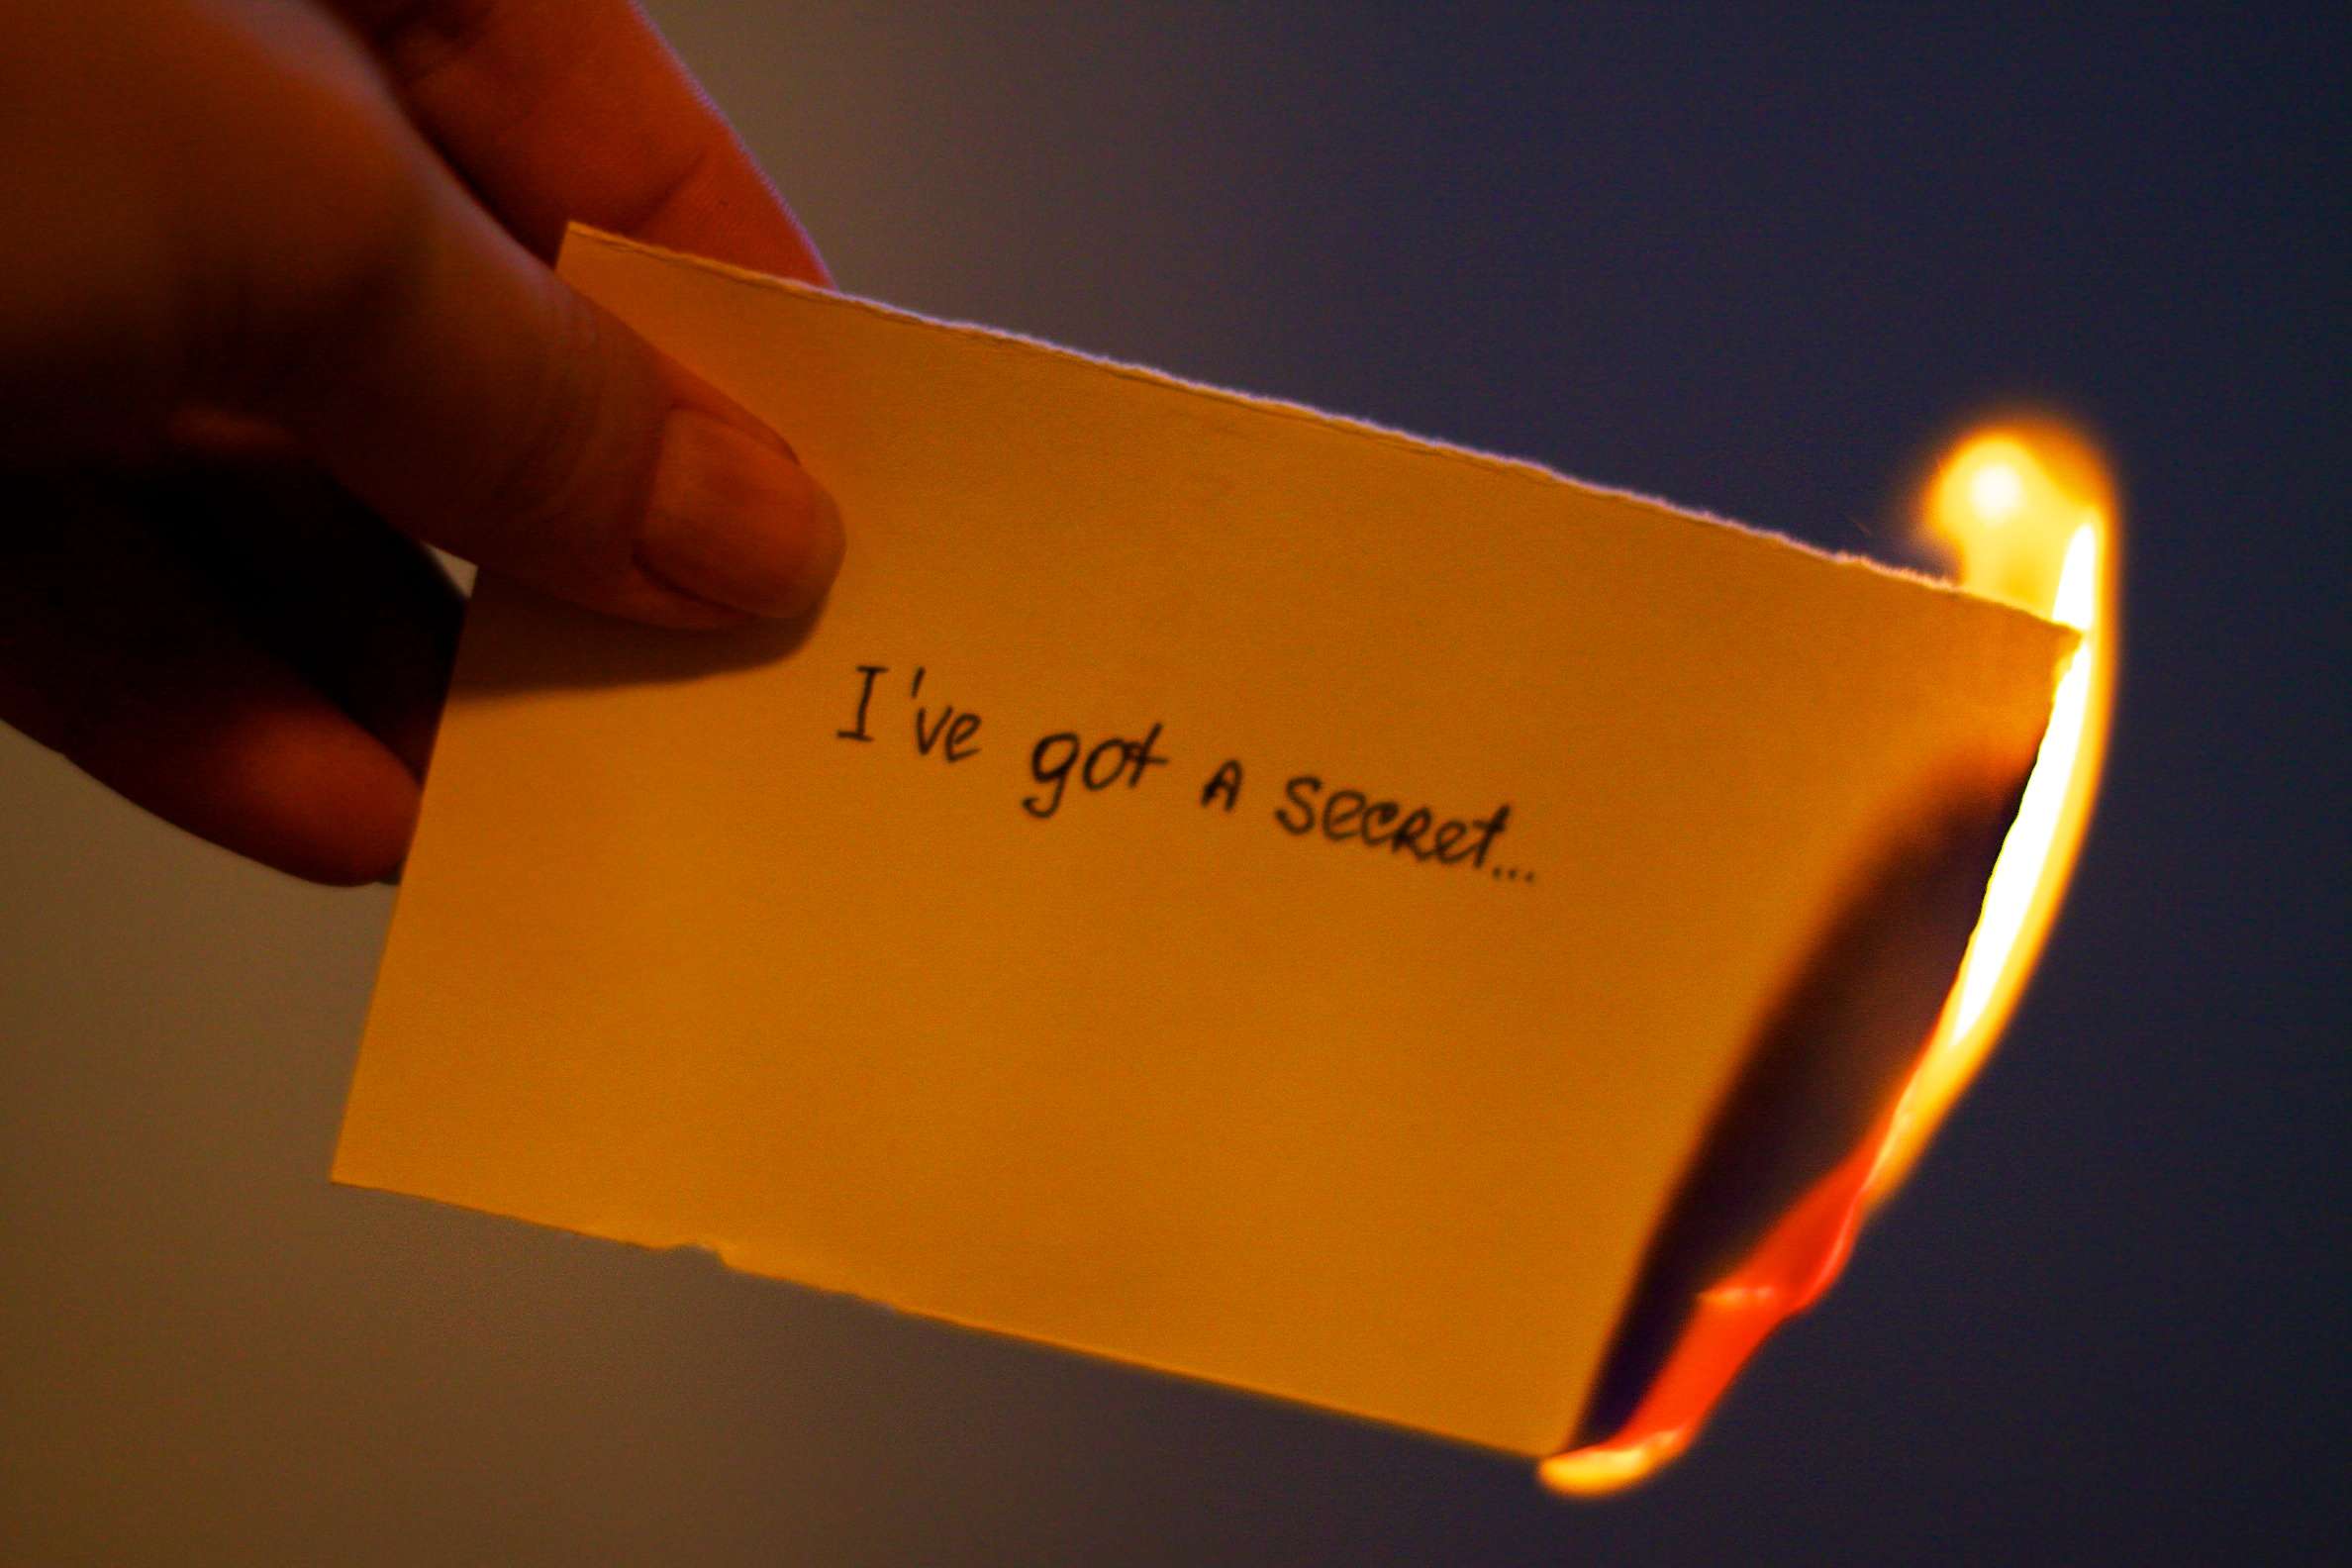 Papír v plamenech, který říká "Mám tajemství ..."